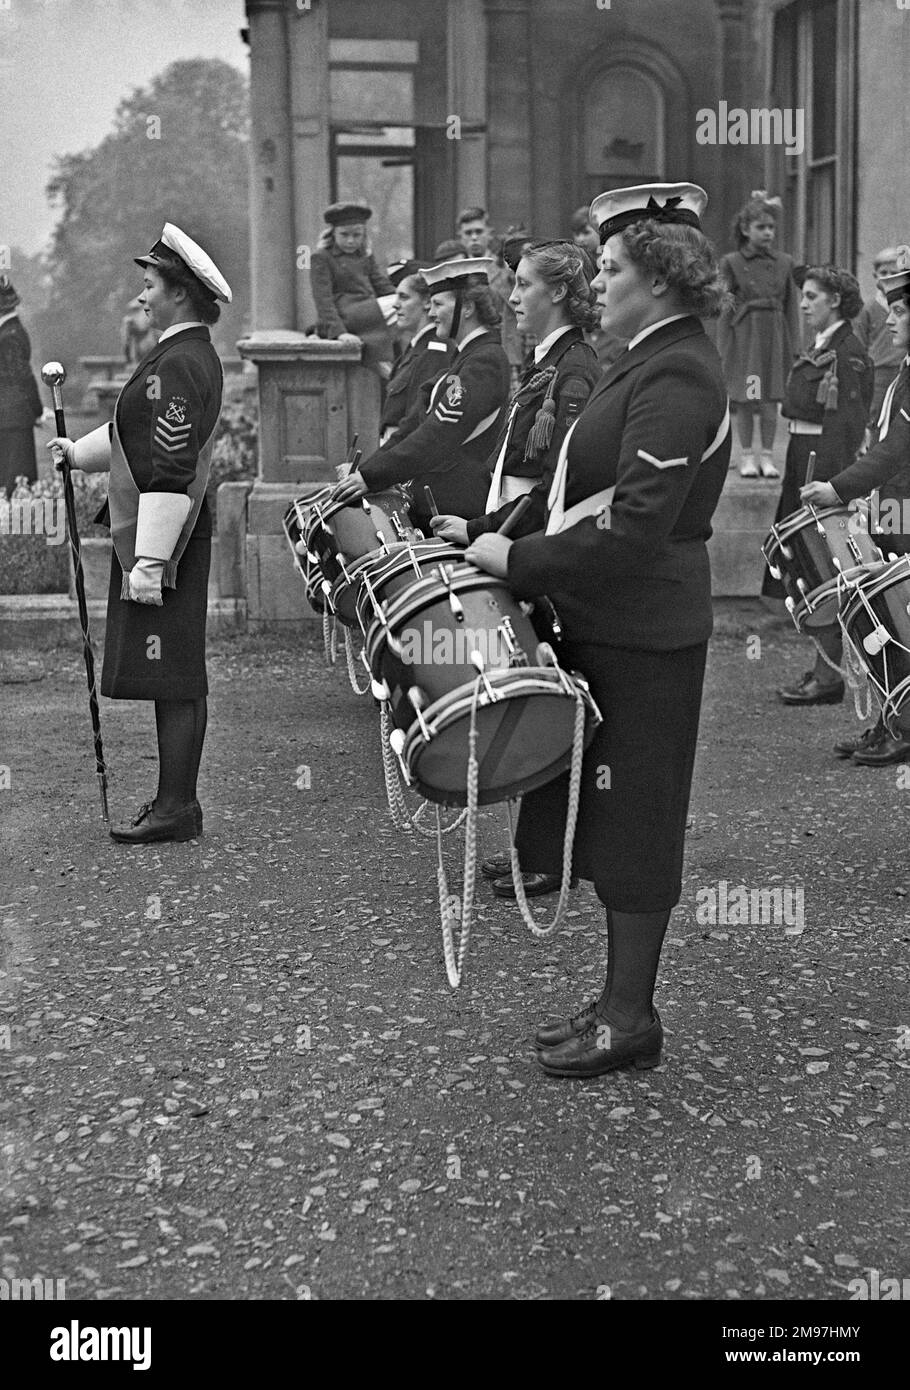 Banda de músicos femeninos en uniforme naval, con tambores. Foto de stock